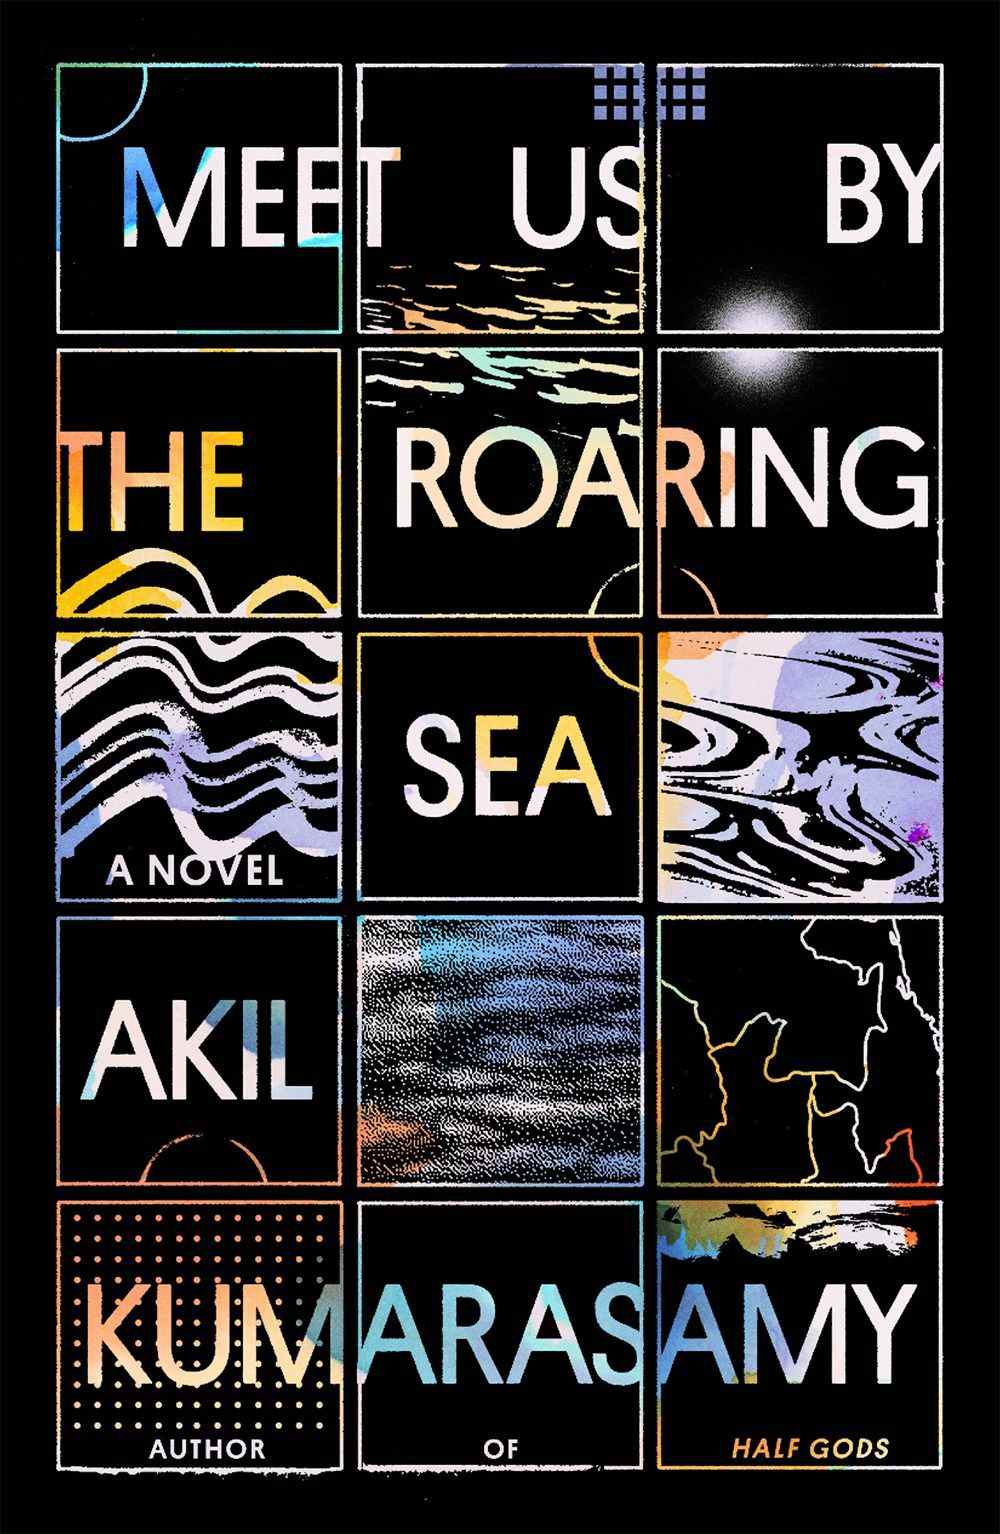 Image de couverture de Meet Us by the Roaring Sea par Akil Kumarasamy, une image de grille avec un arrière-plan et des images géographiques assorties dans chaque grille.